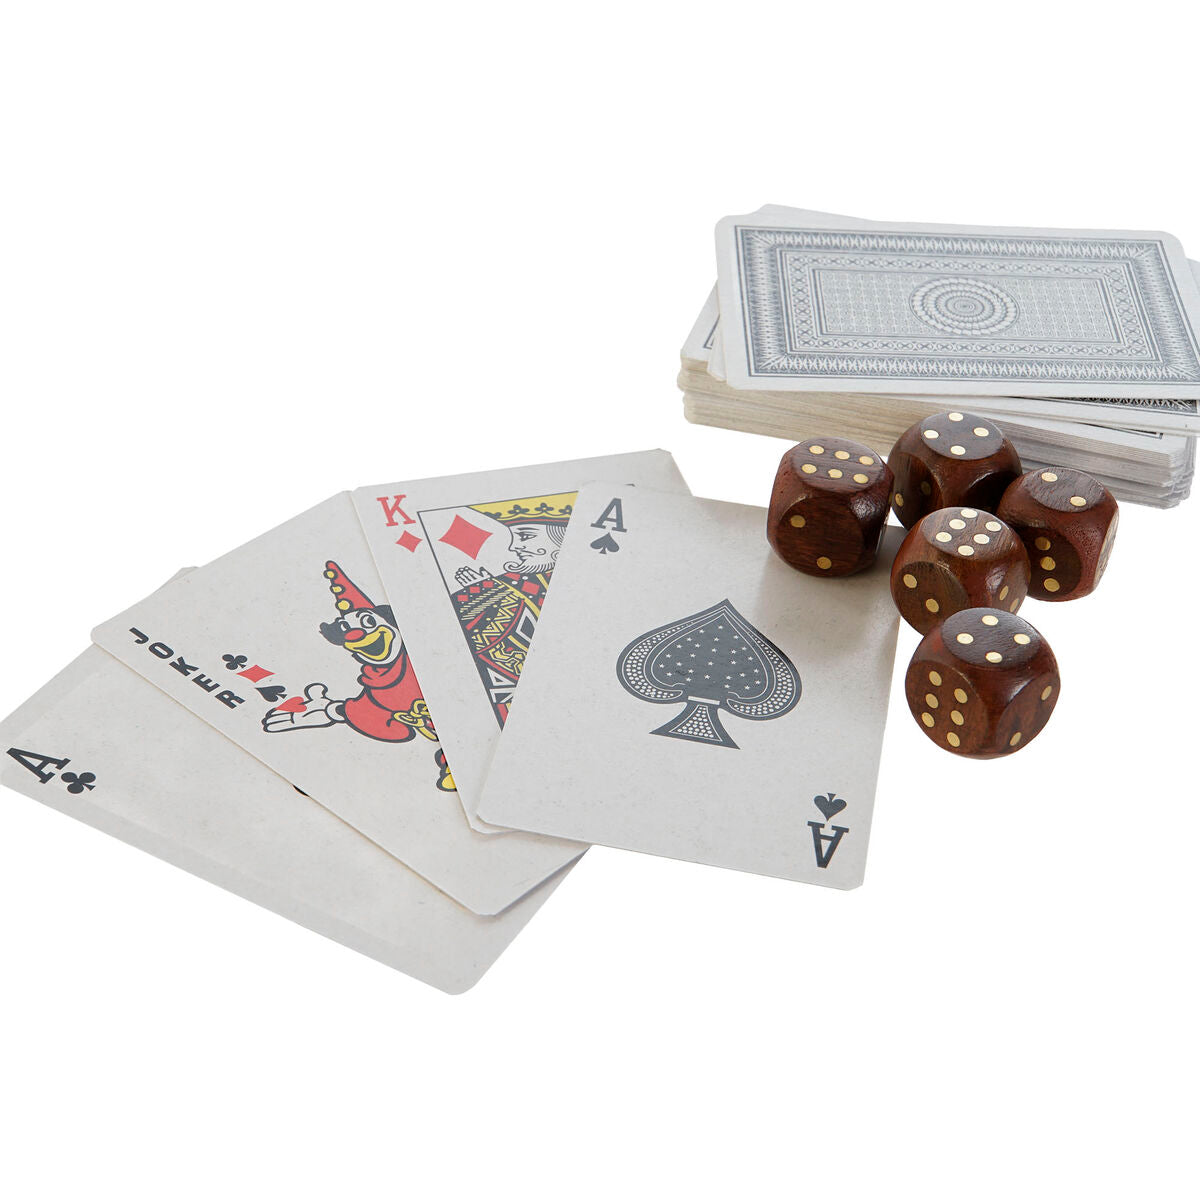 Card & dice set